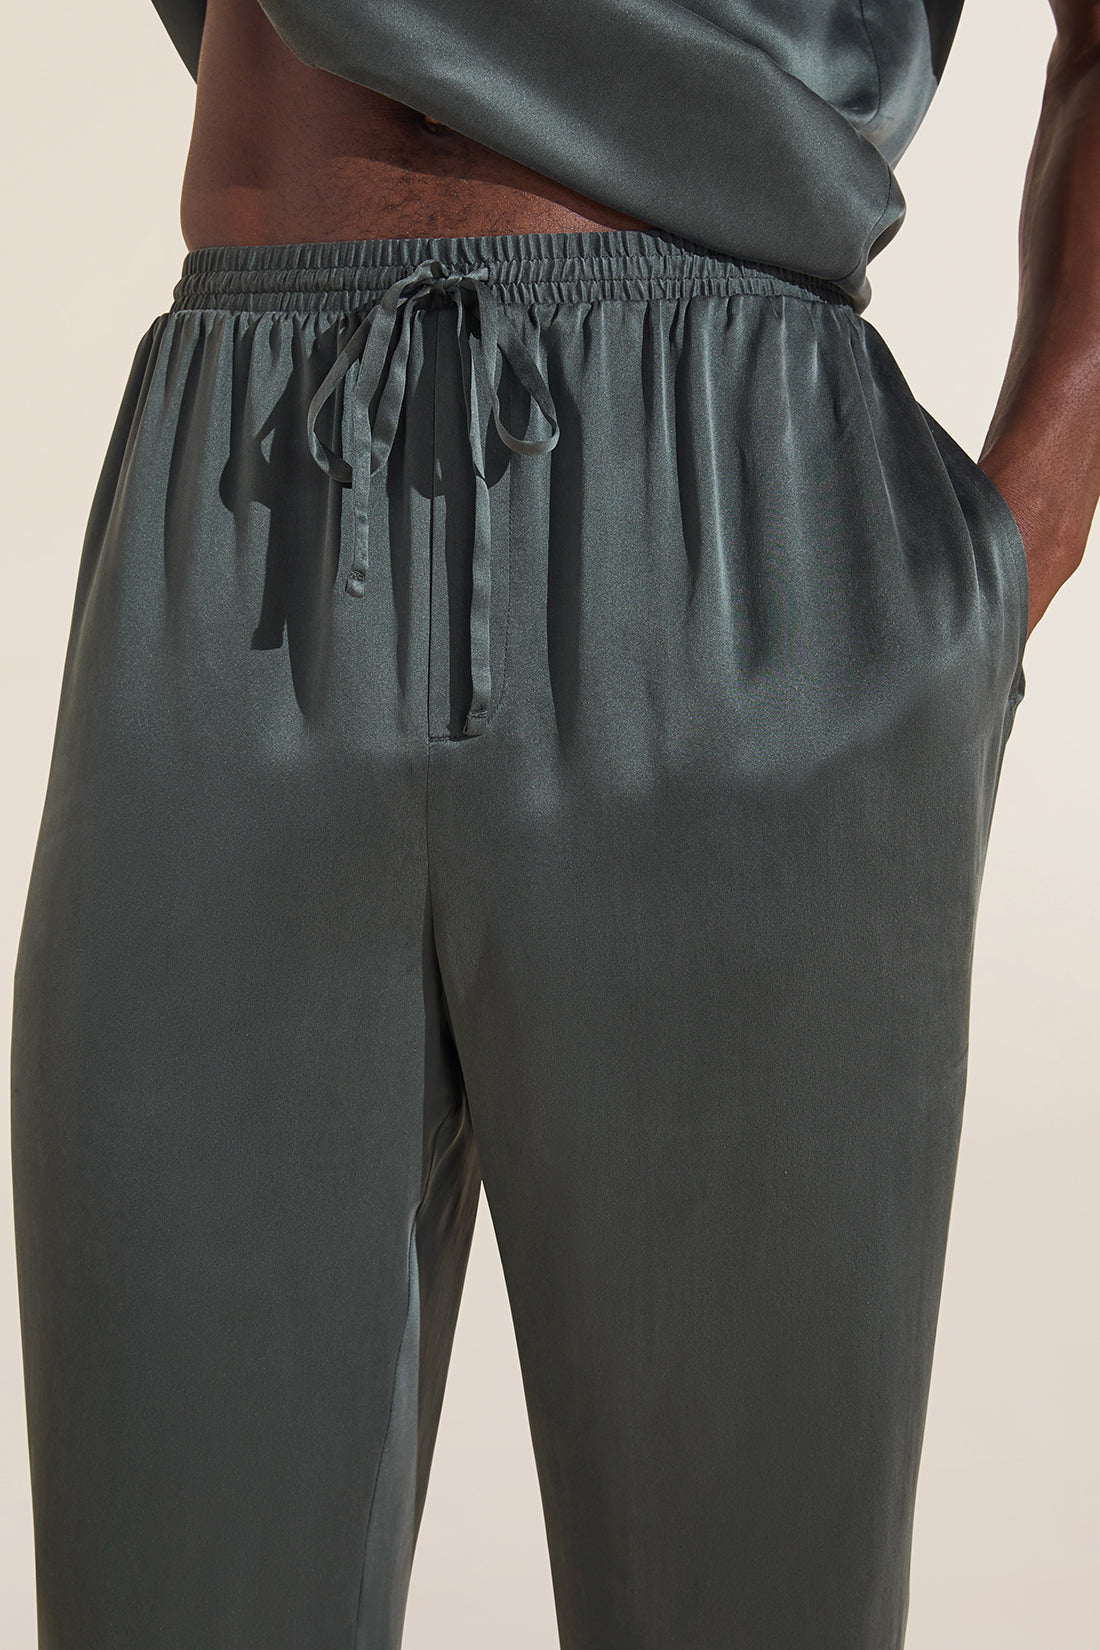 Charles Washable Silk Short Sleeve & Pant PJ Set - Kelp